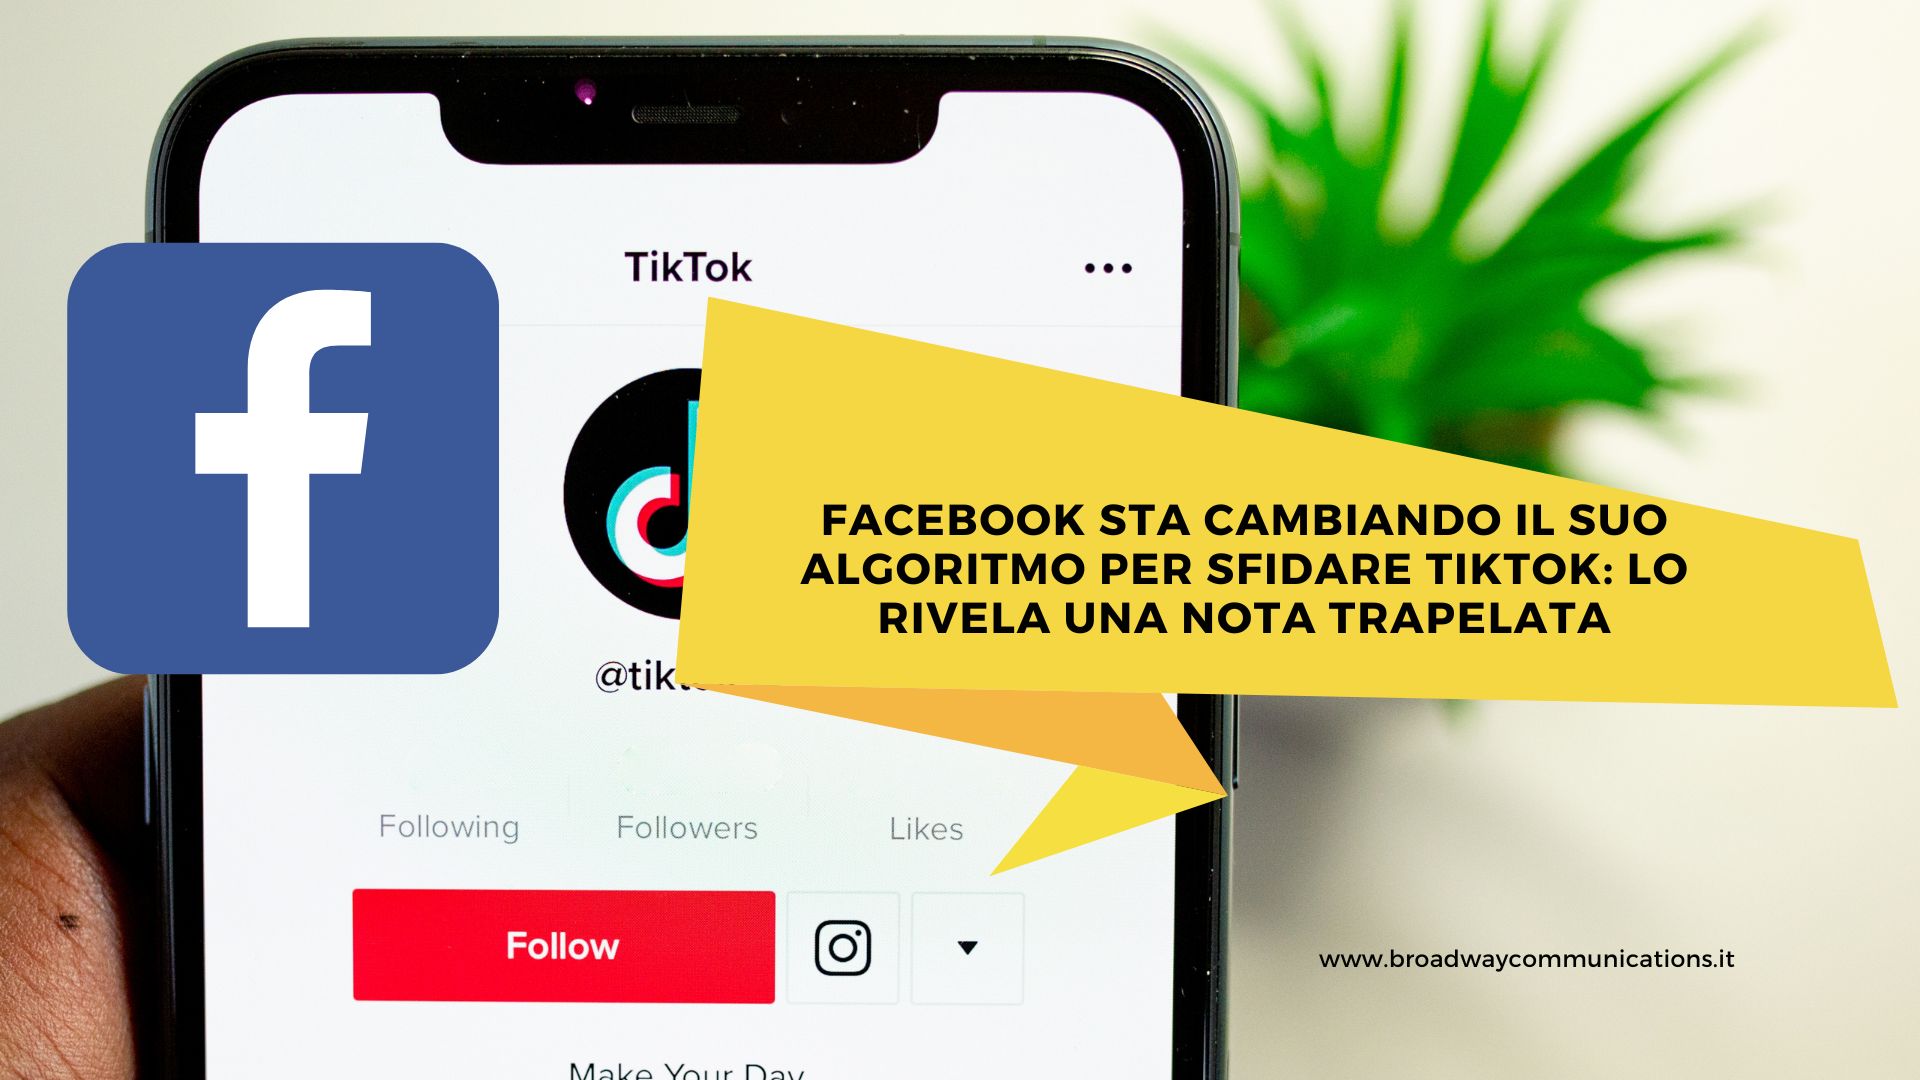 Facebook sta cambiando il suo algoritmo per sfidare TikTok lo rivela una nota trapelata